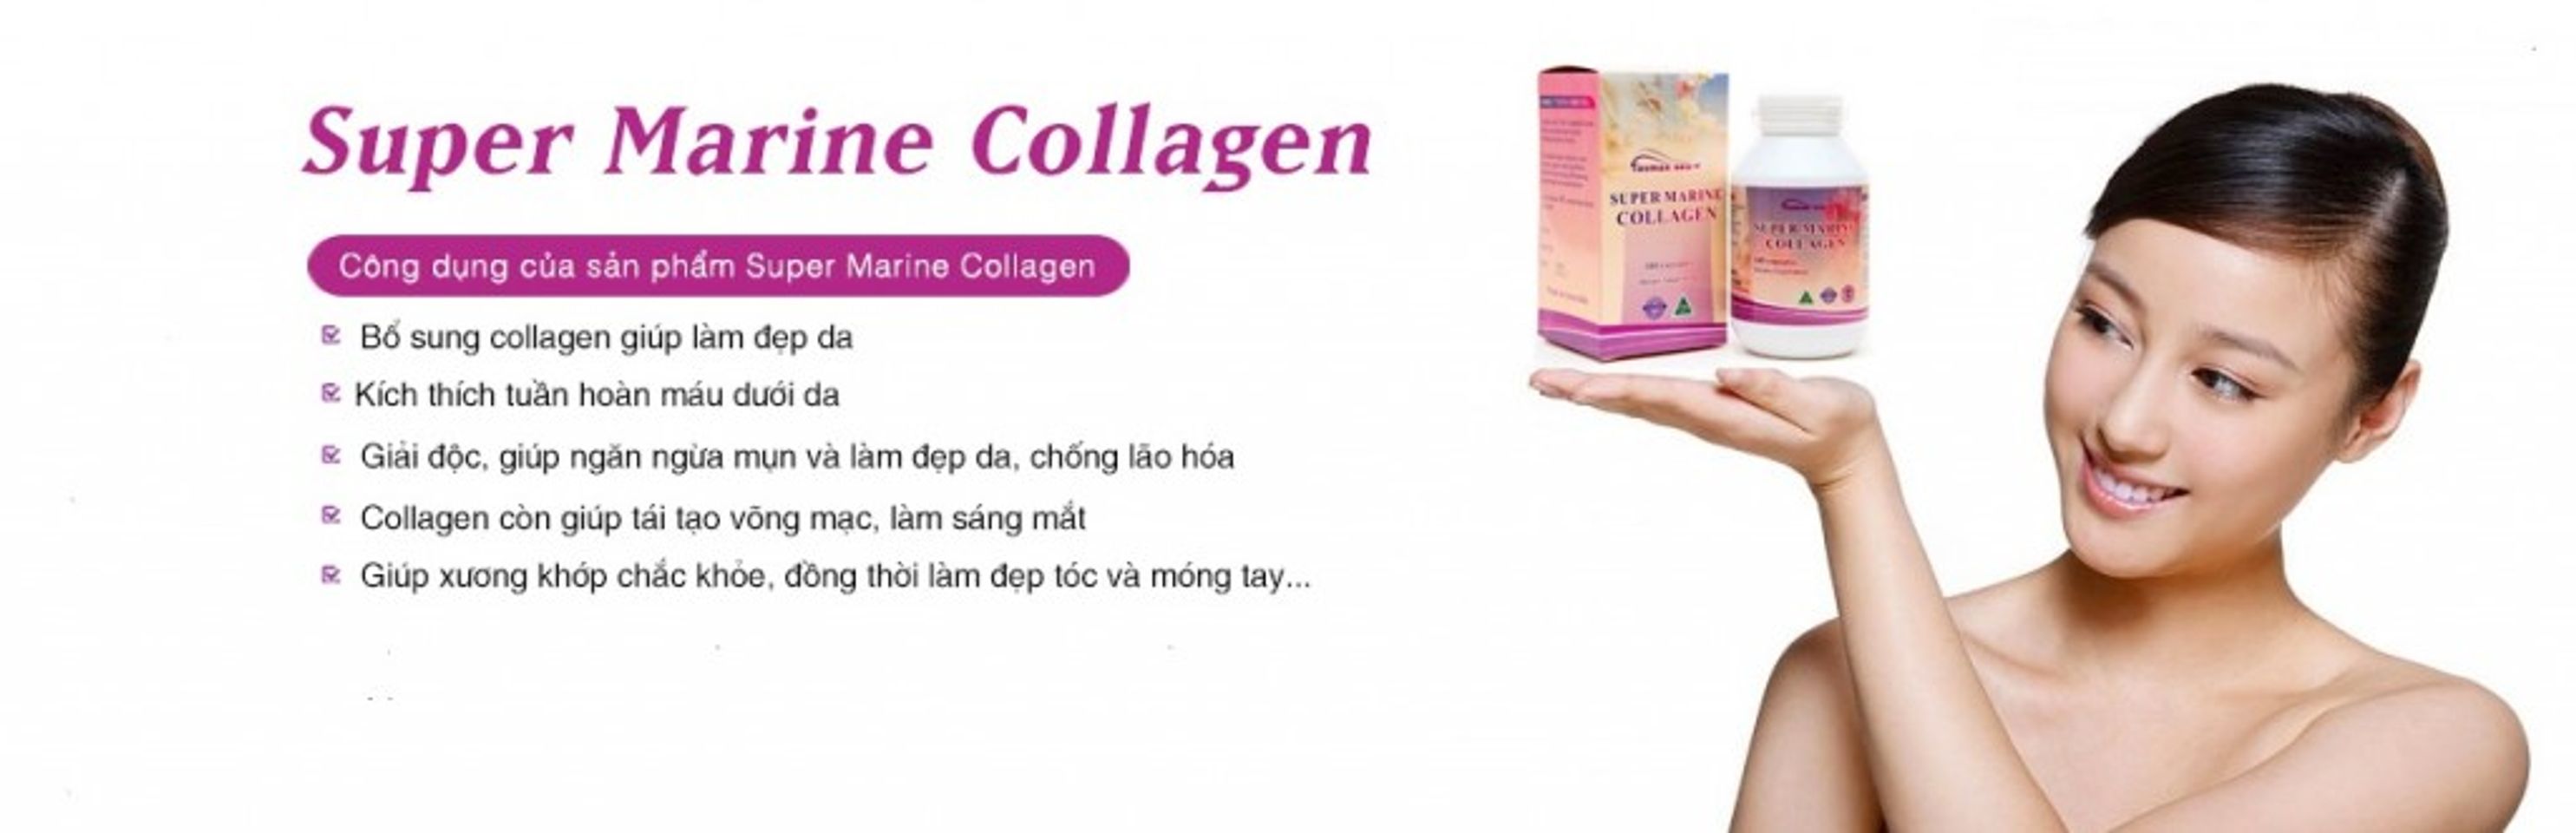 Super Marine Collagen - đẹp da, hỗ trợ cân bằng hocmon nữ, giảm hội chứng mệt mỏi tiền mãn kinh 1